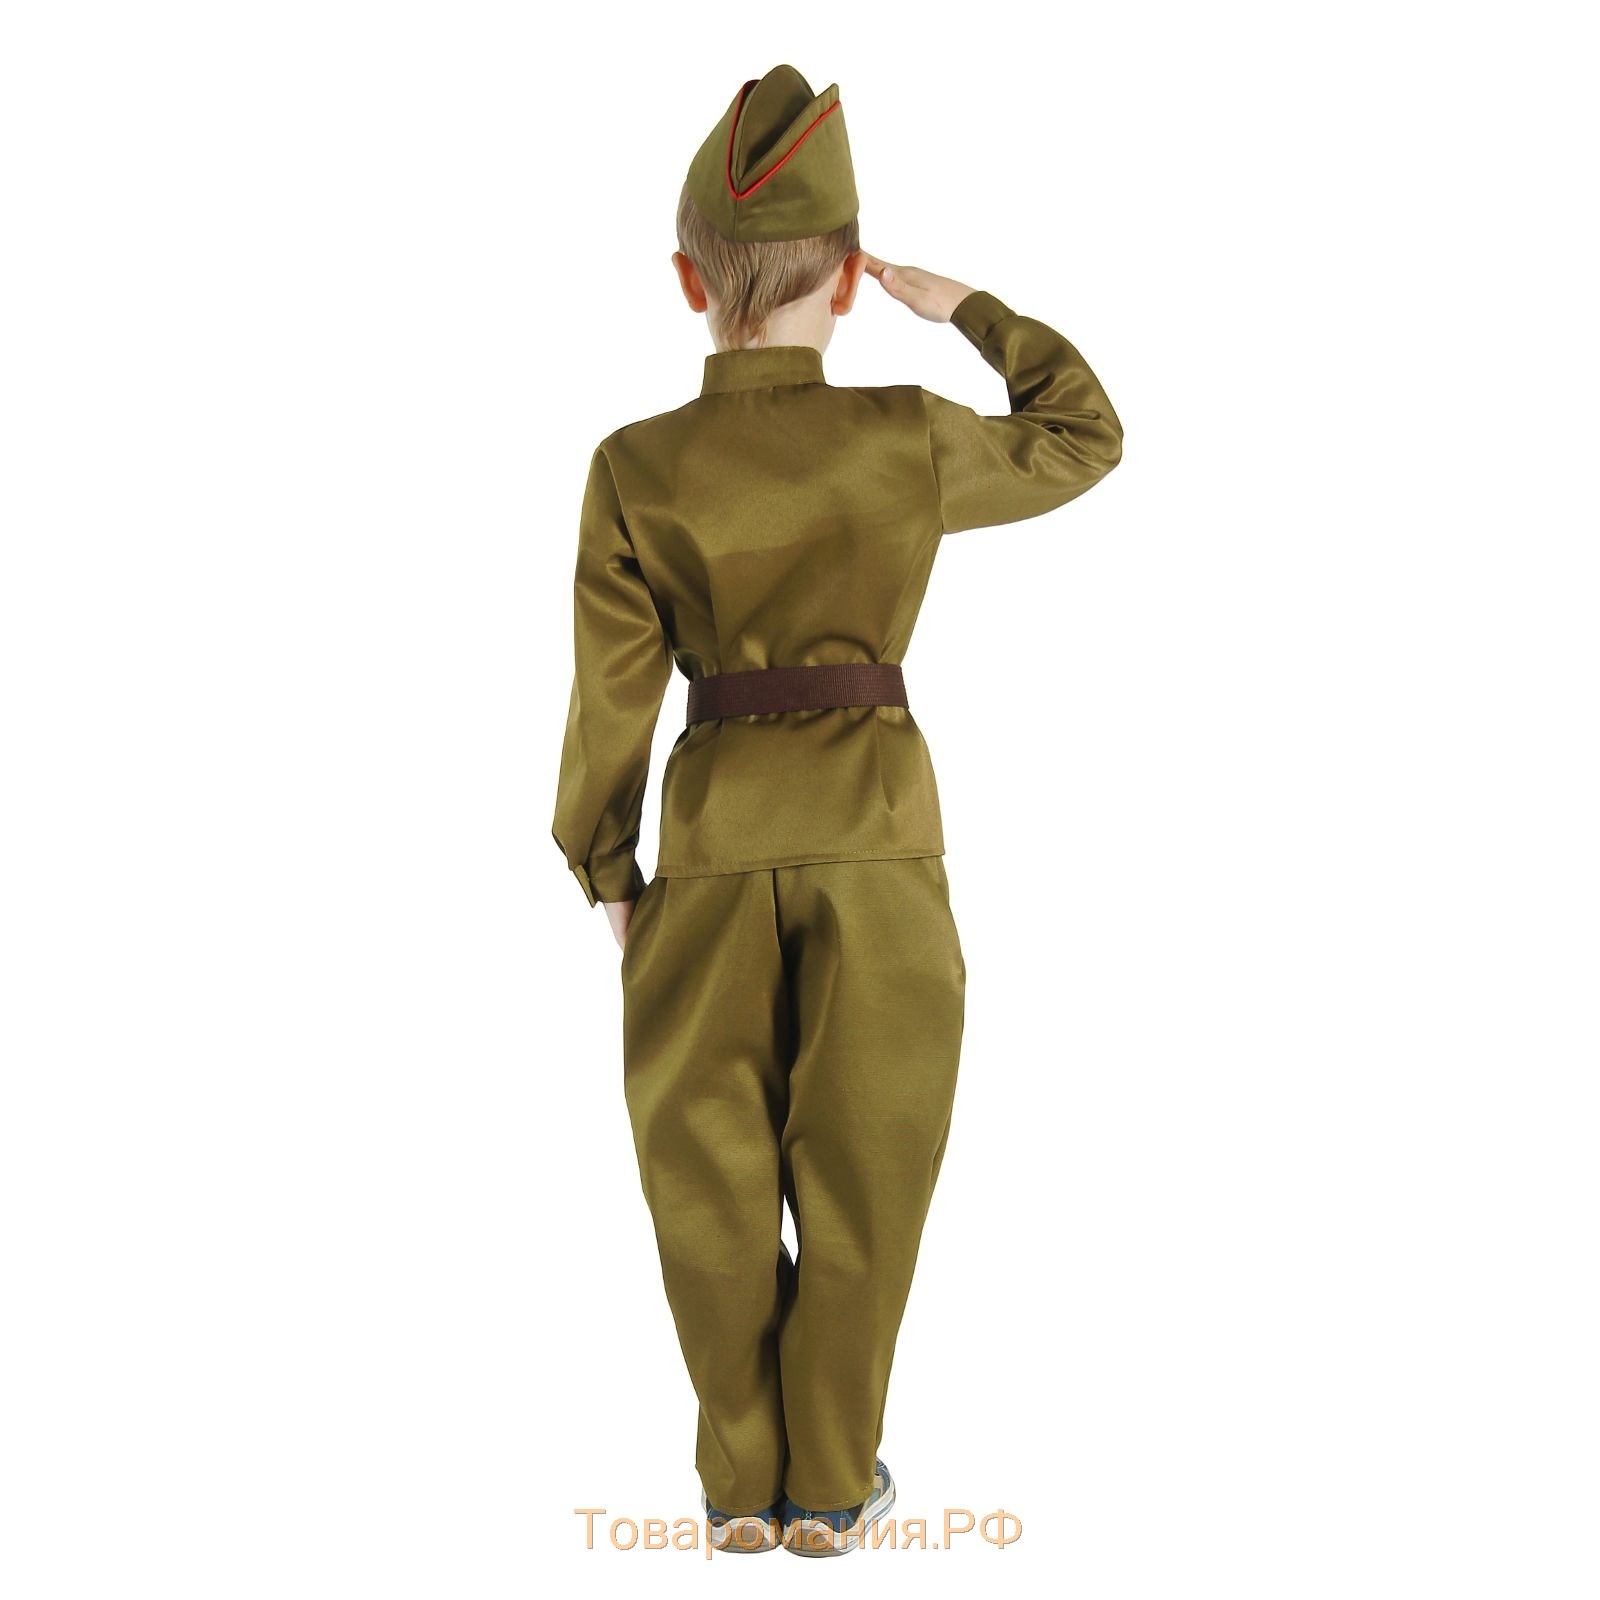 Детский карнавальный костюм "Военный", брюки, гимнастёрка, ремень, пилотка, р-р 30-32, рост 120-130 см